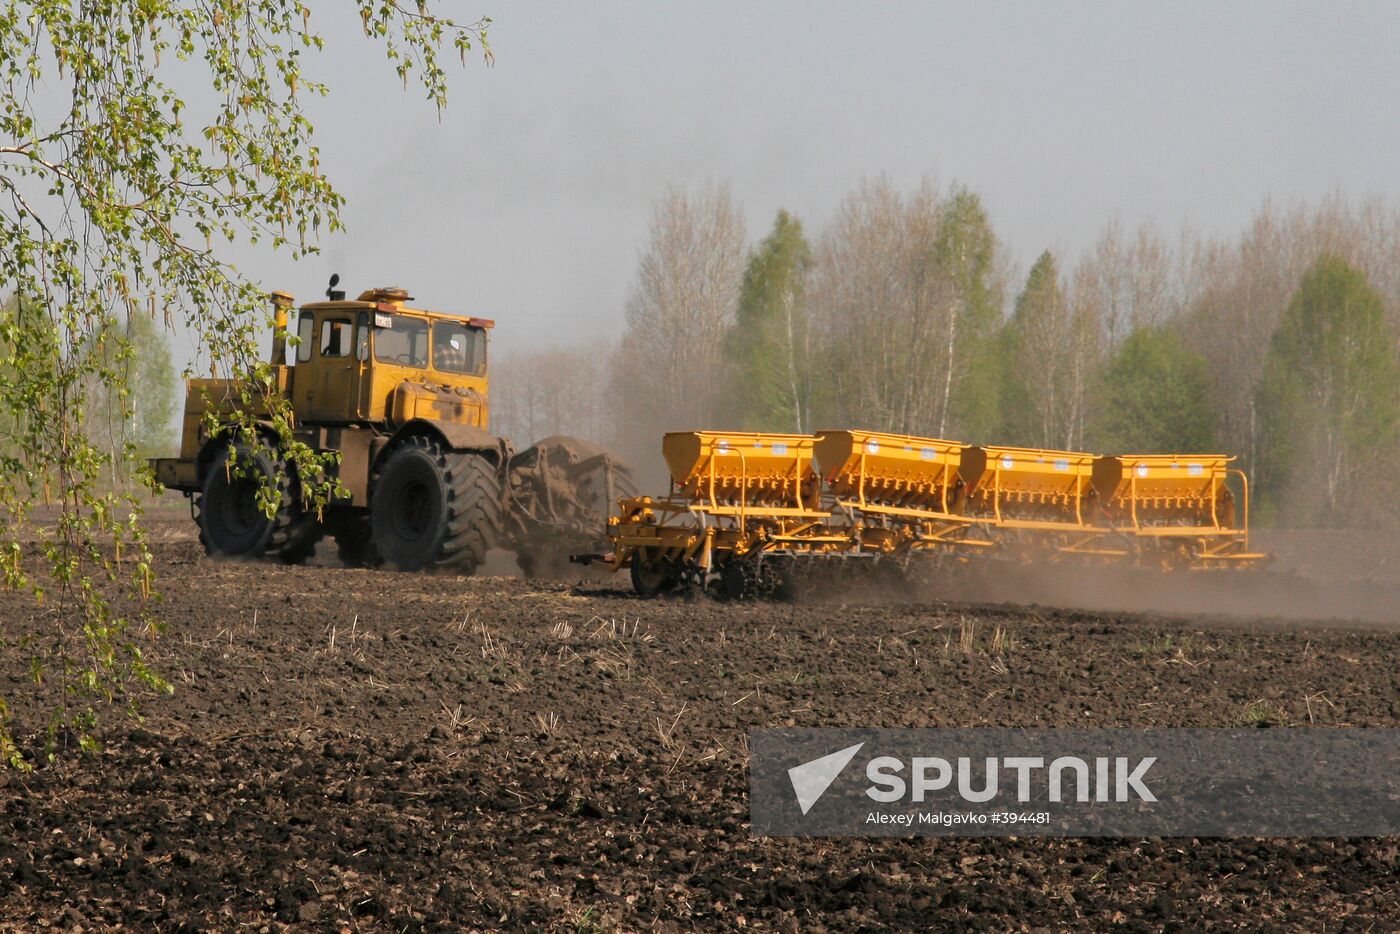 Sowing cereal crops in Omsk Region